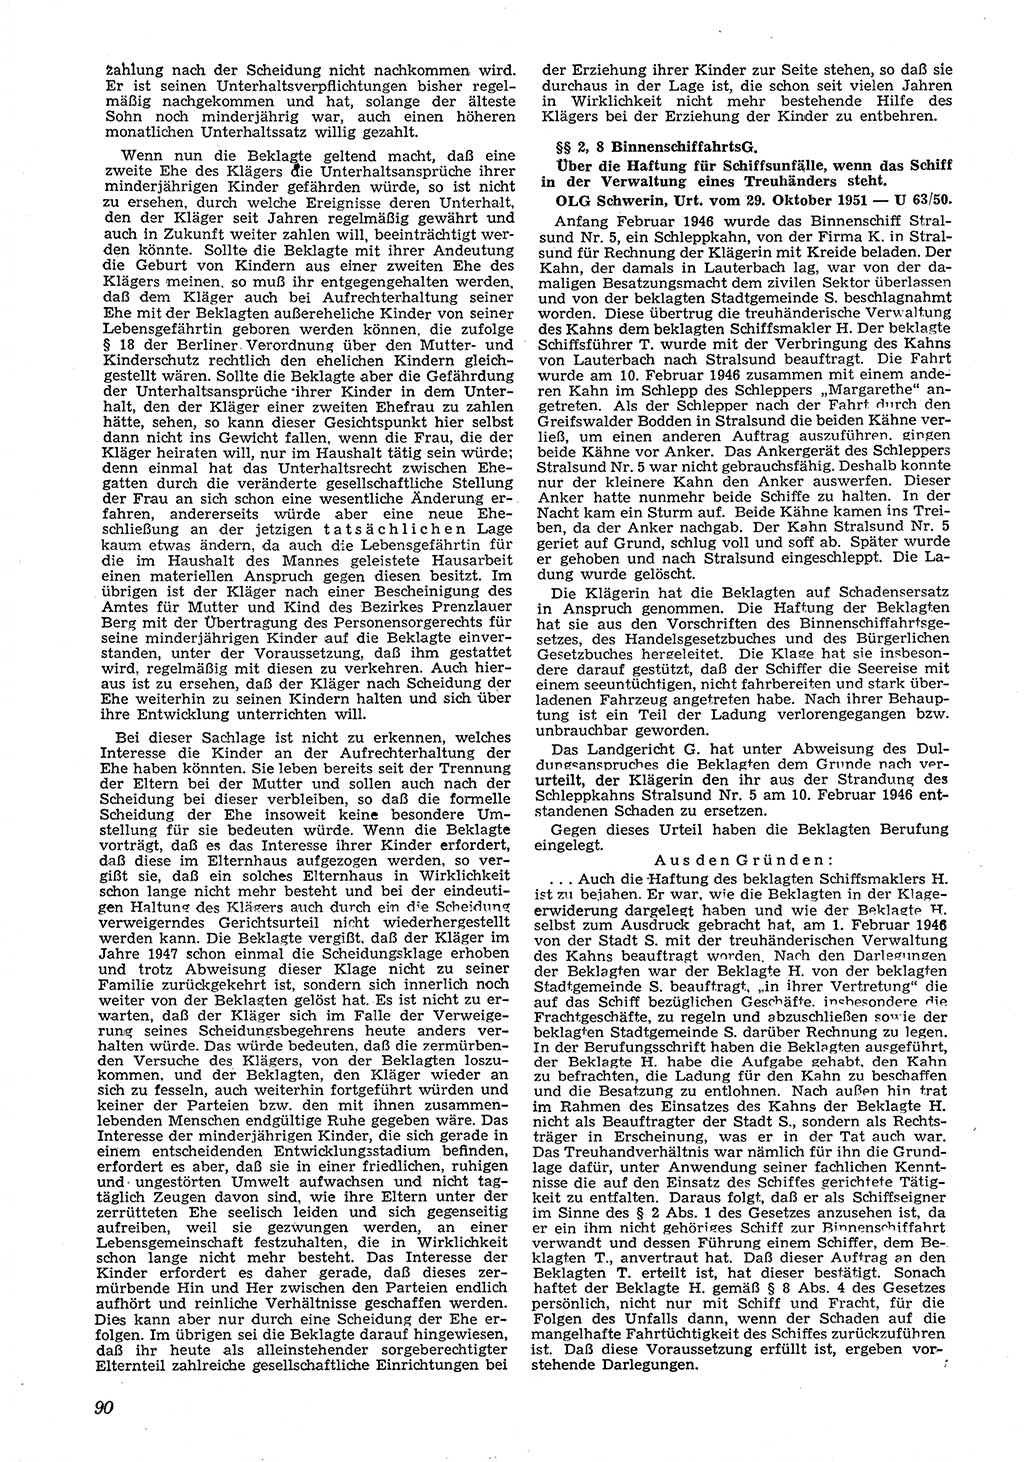 Neue Justiz (NJ), Zeitschrift für Recht und Rechtswissenschaft [Deutsche Demokratische Republik (DDR)], 6. Jahrgang 1952, Seite 90 (NJ DDR 1952, S. 90)